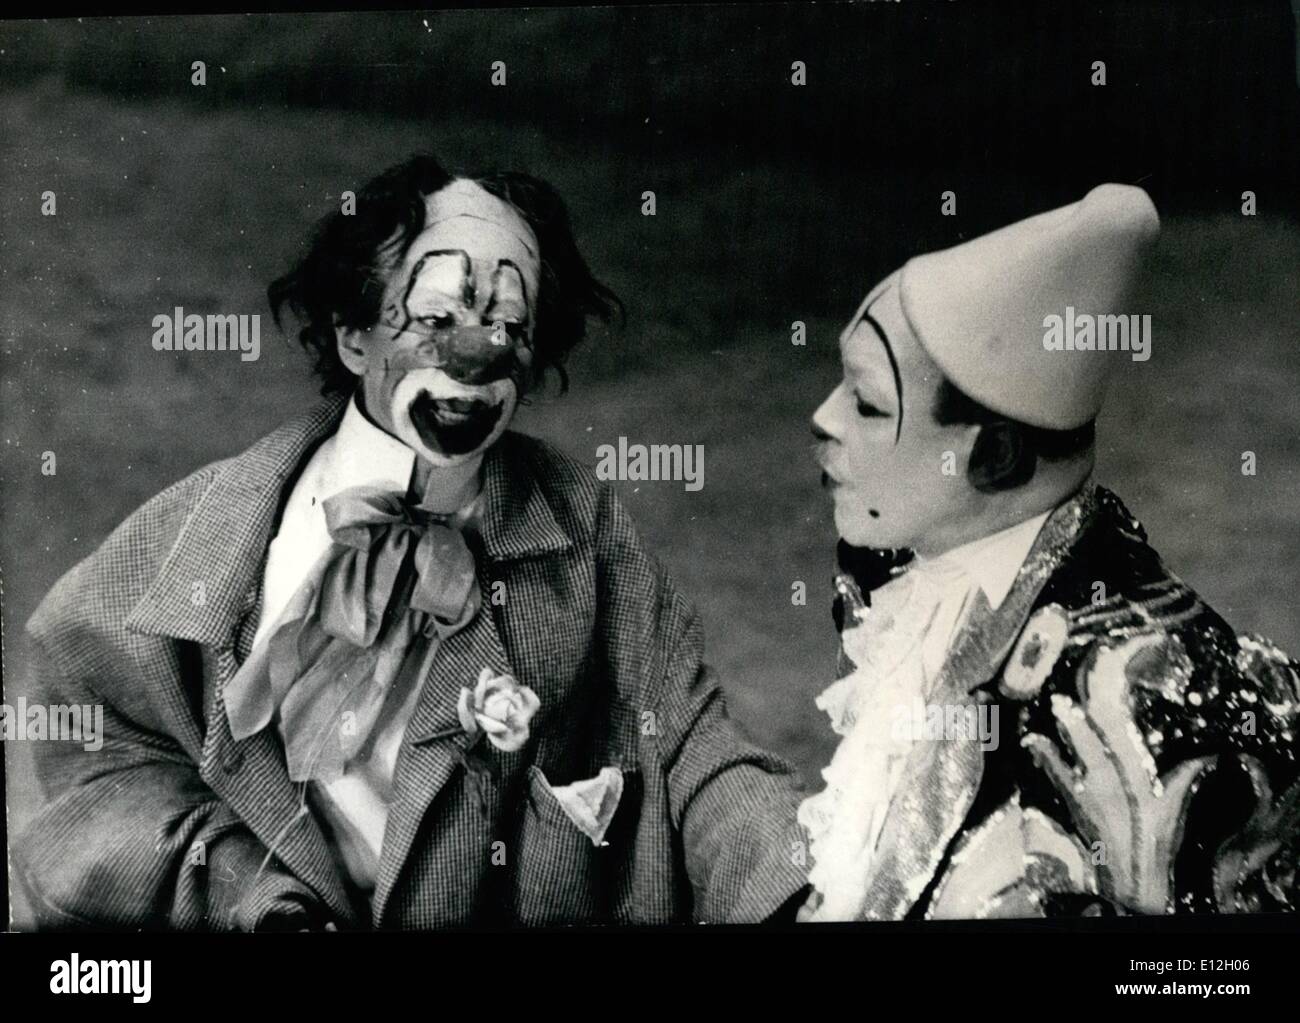 10 janvier 2012 - Martine Carol comme clown : photo montre : le célèbre écran star Martine Carol (gauche) comme un clown, un acte qu'elle accompli pour le spectacle annuel de bienfaisance organisée par l'Union des Artistes de Paris. Sur la droite, son partenaire, Bille Coleman, le trompettiste noir. Banque D'Images